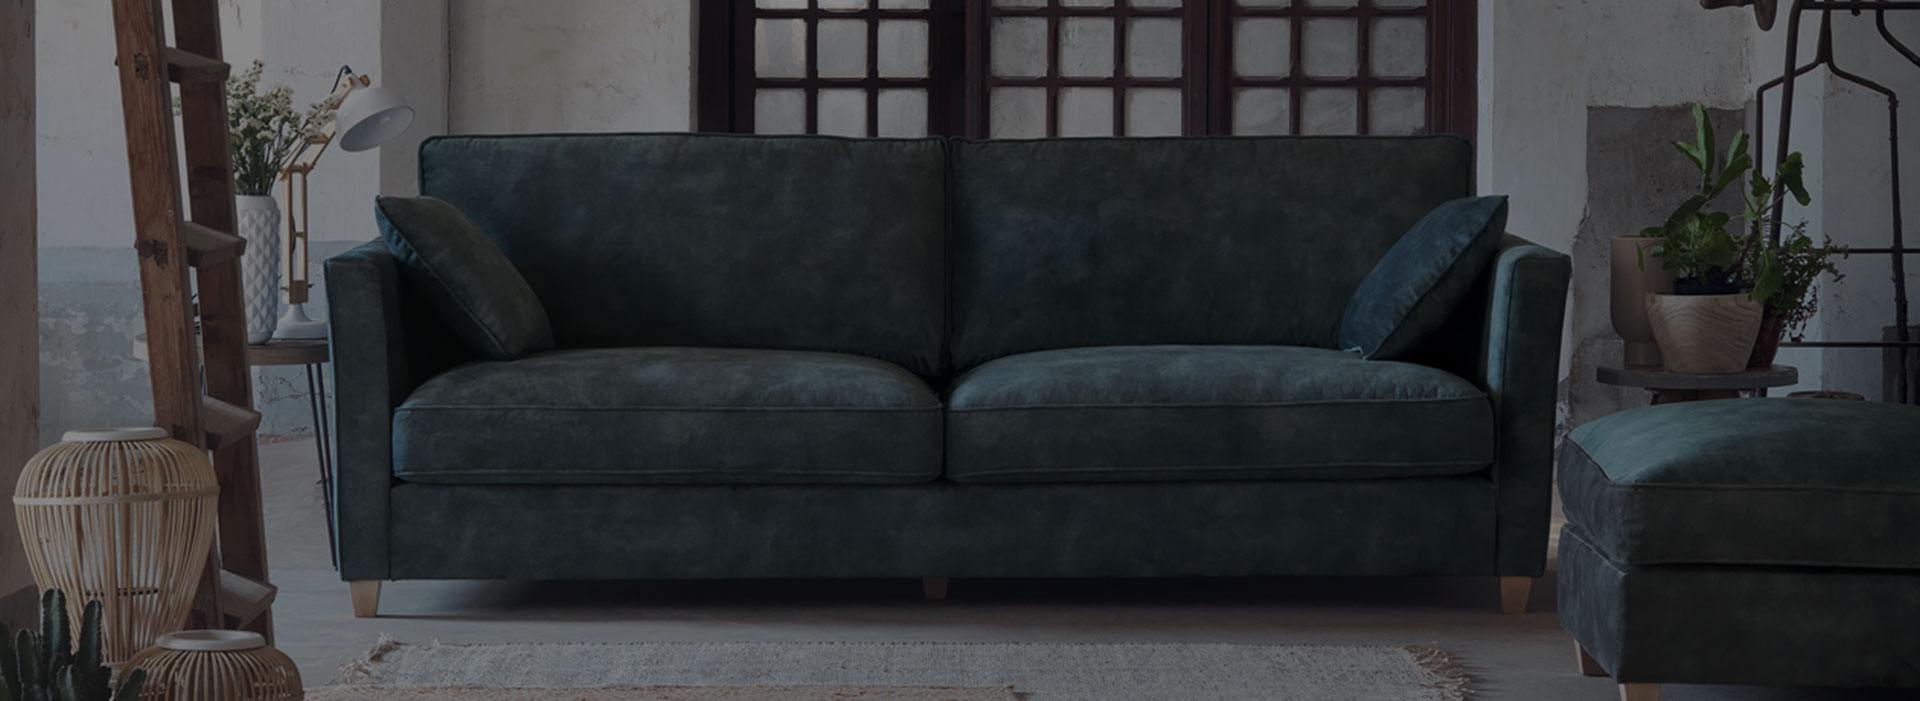 Comment rendre un canapé plus confortable ?